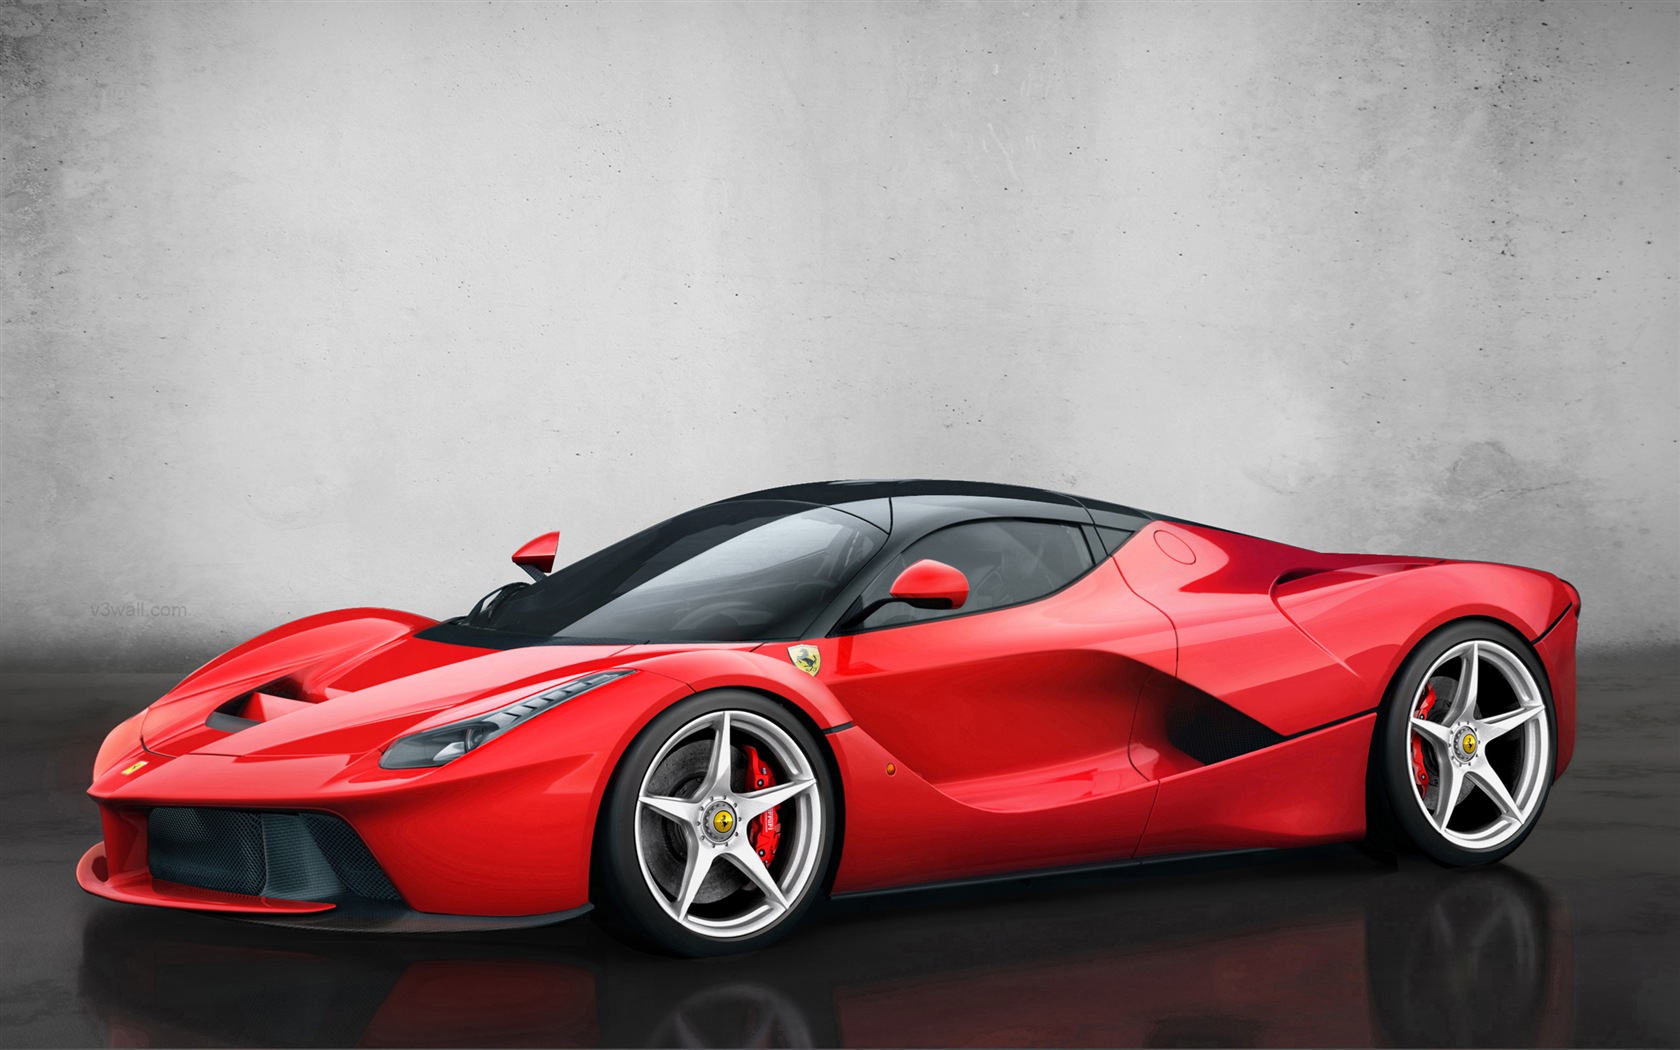 2013フェラーリLaFerrari赤いスーパーカーのHD壁紙 #7 - 1680x1050